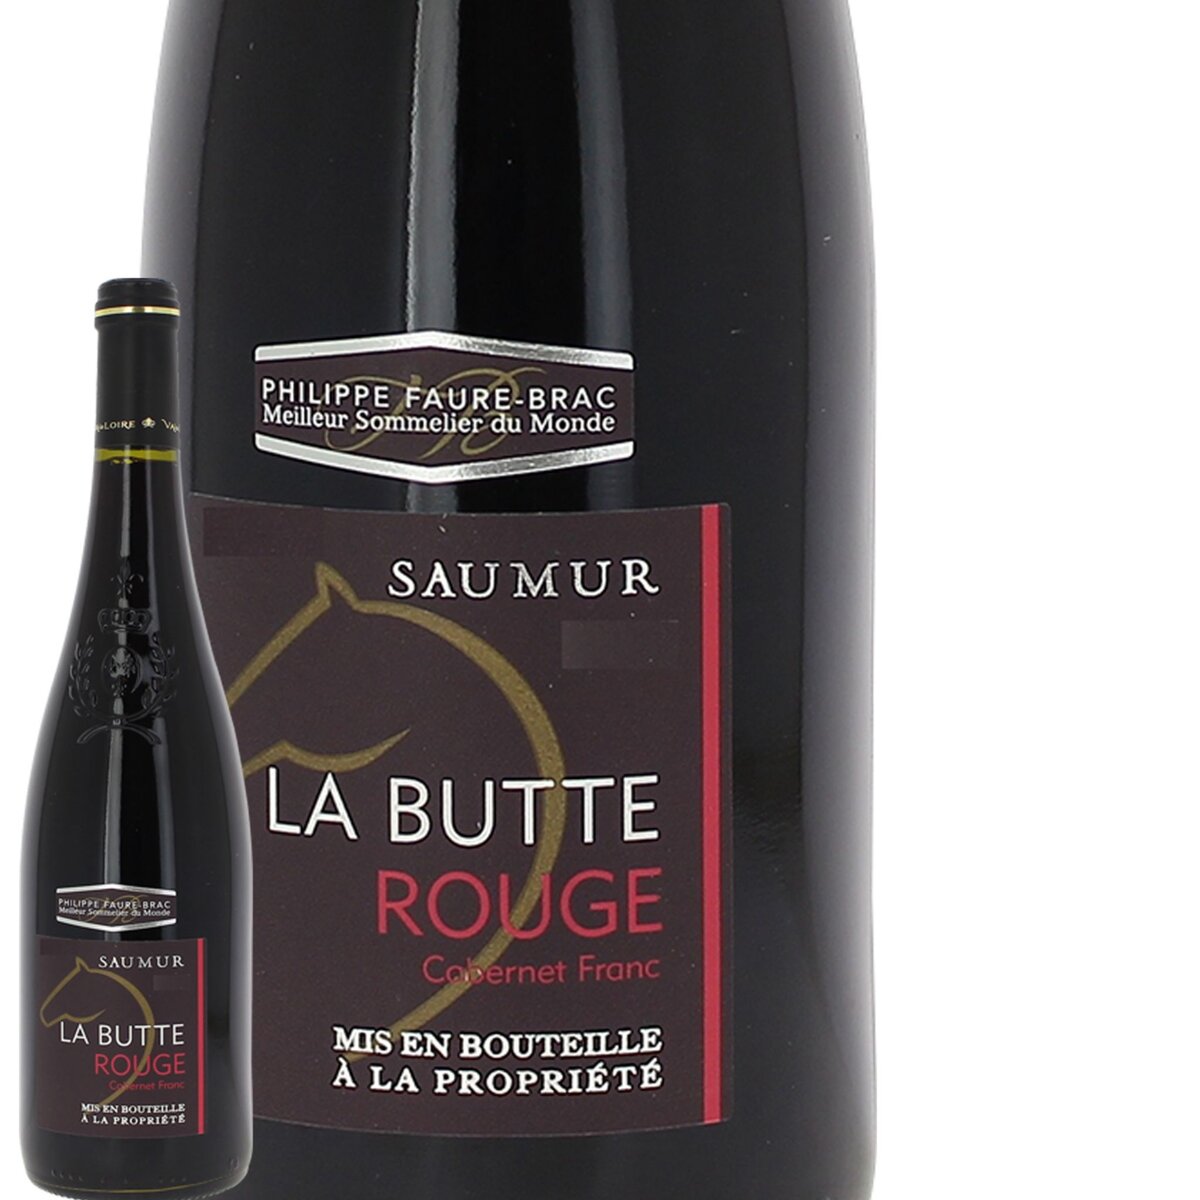 La Butte Saumur Collection Philippe Faure Brac Rouge 2015